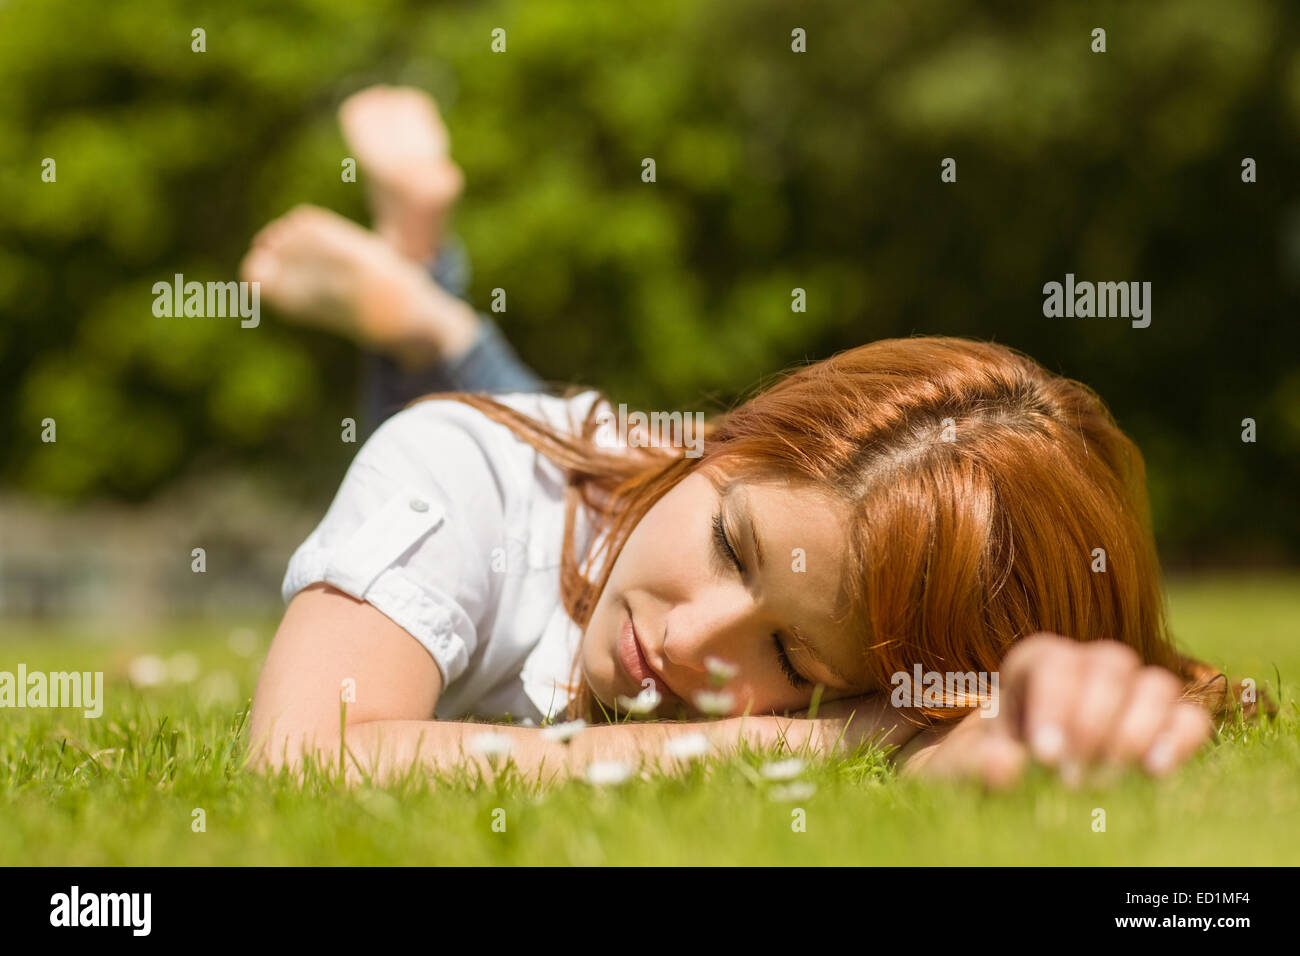 Jolie rousse la sieste sur l'herbe Banque D'Images